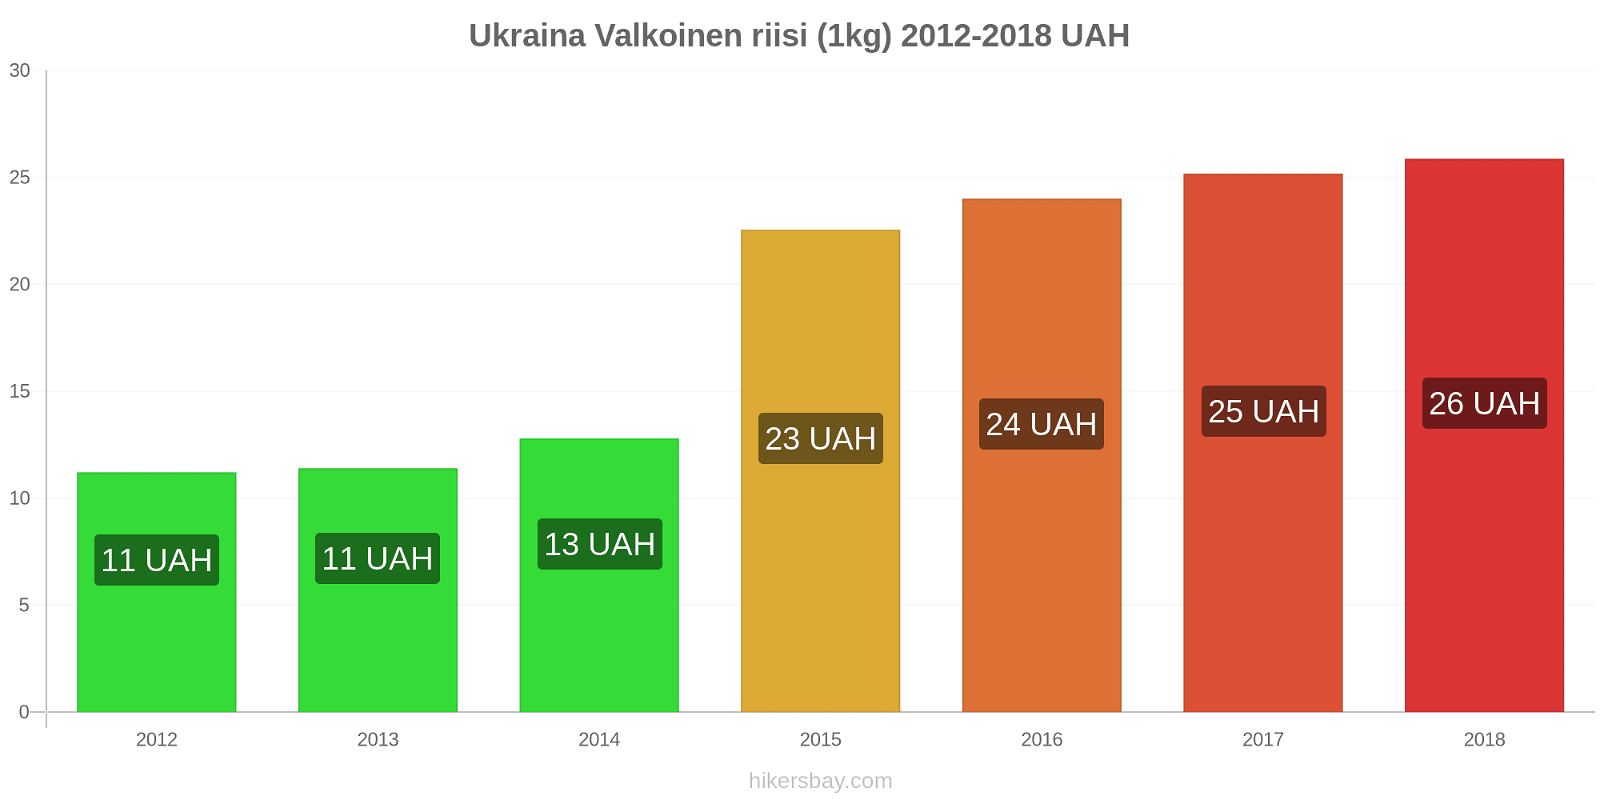 Ukraina hintojen muutokset Valkoinen riisi (1kg) hikersbay.com